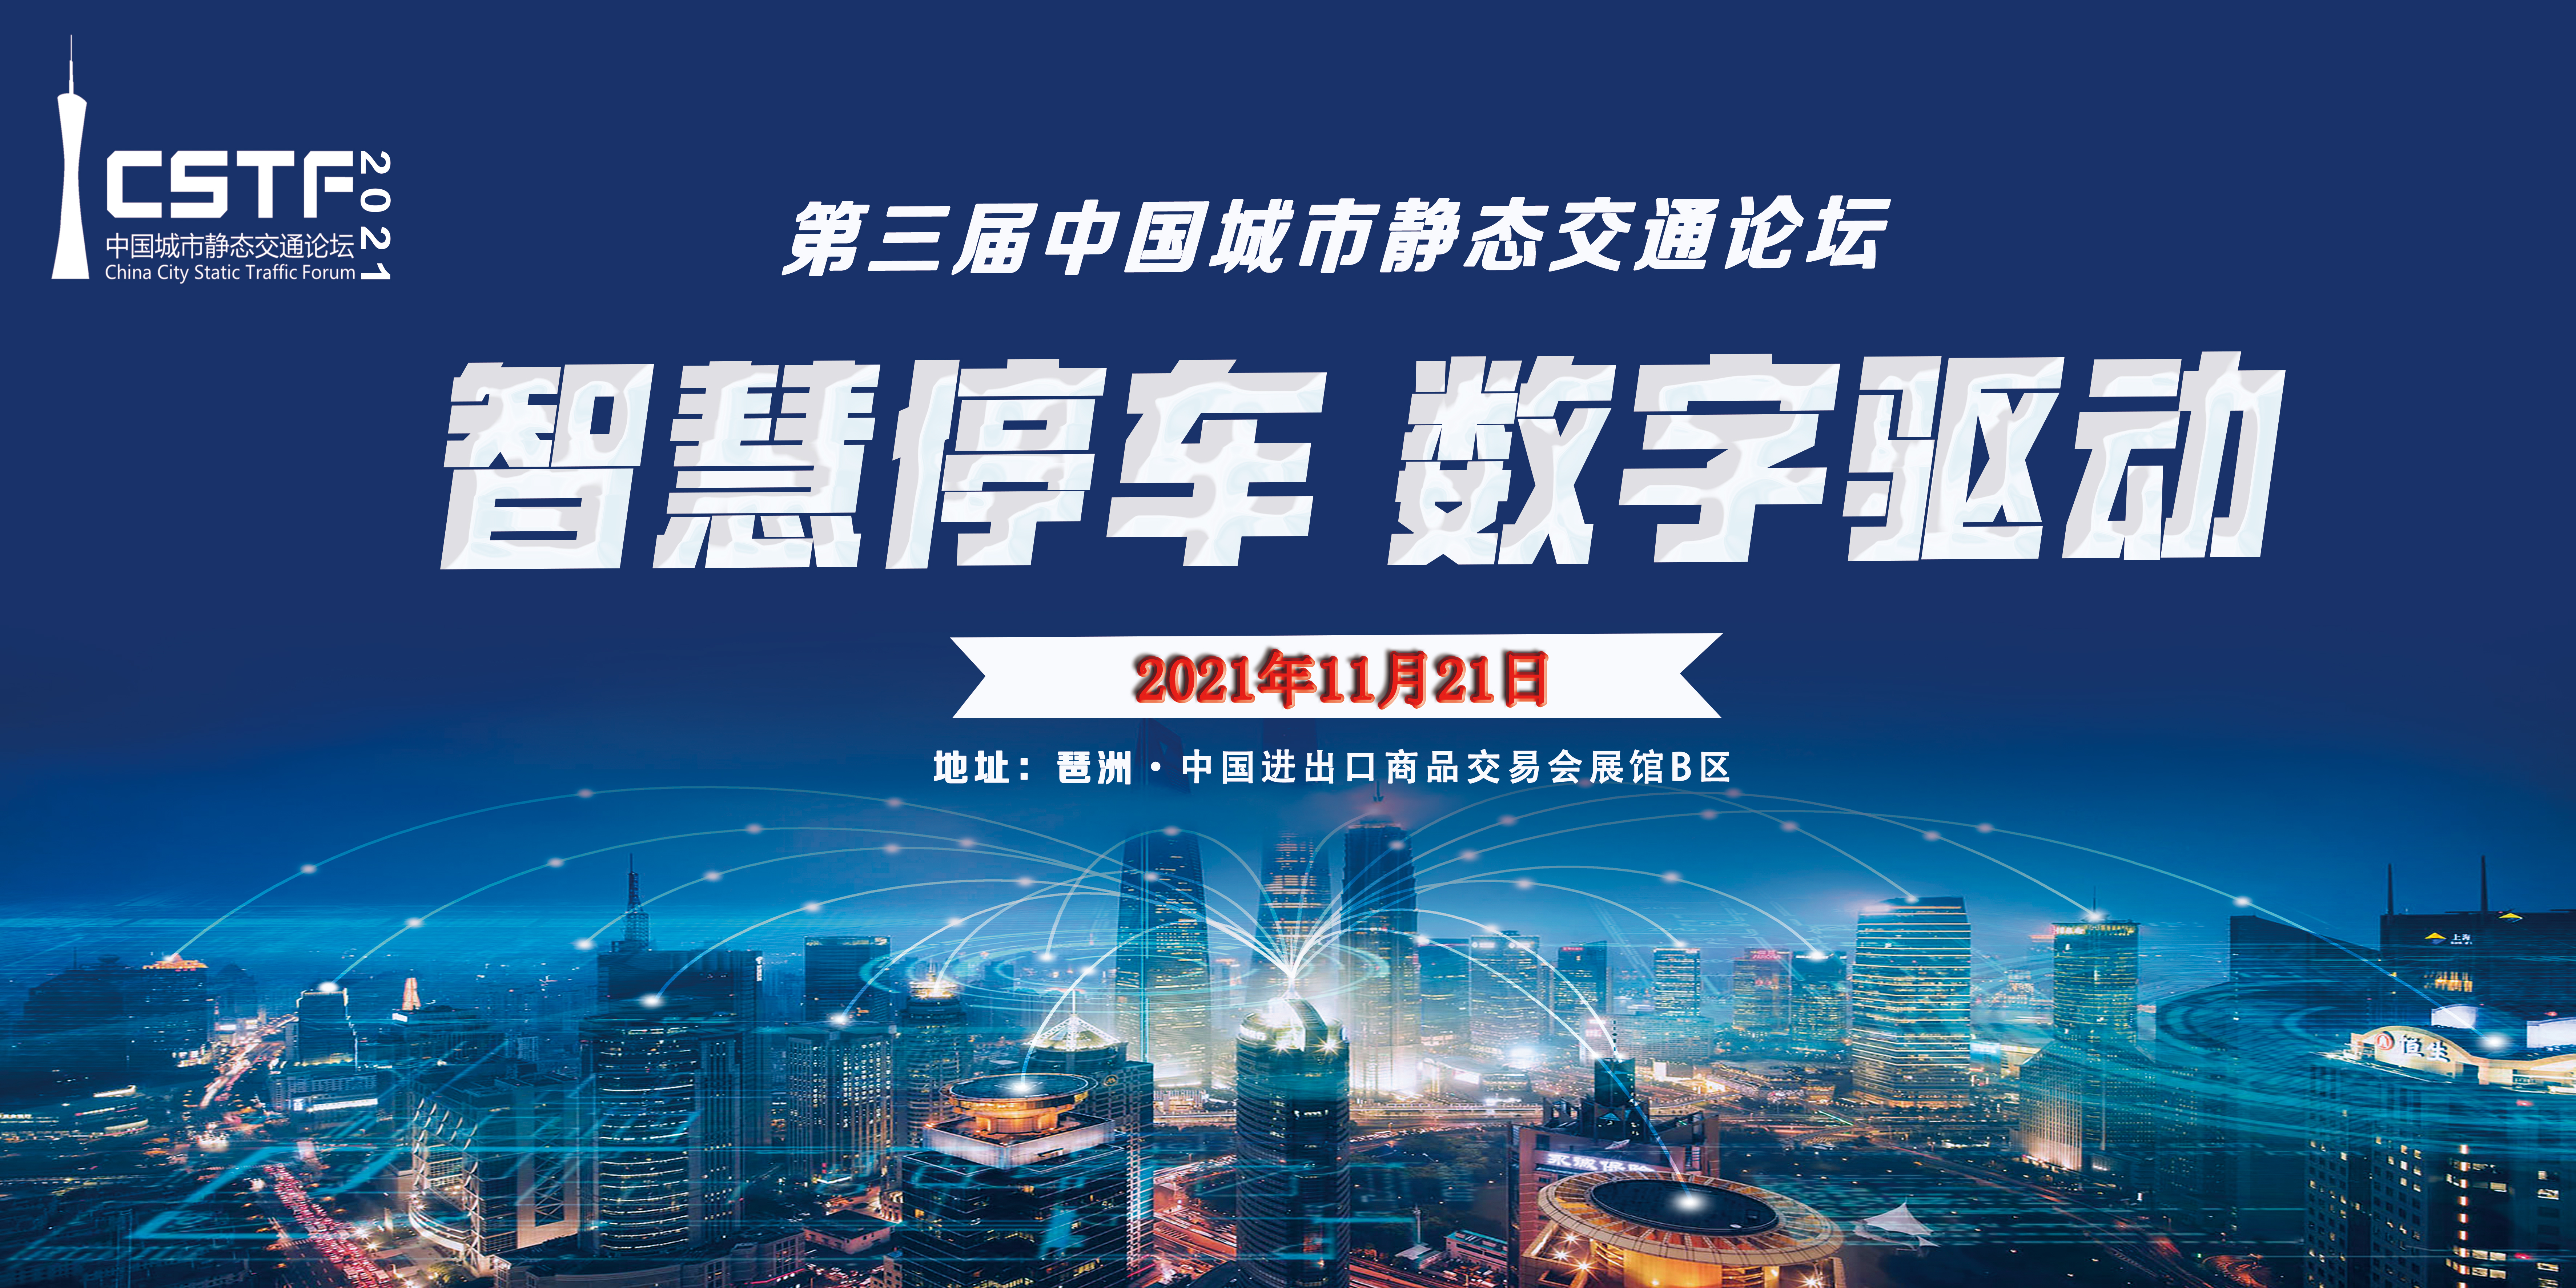 第三届中国城市静态交通论坛将于2021年11月21日在广州举办